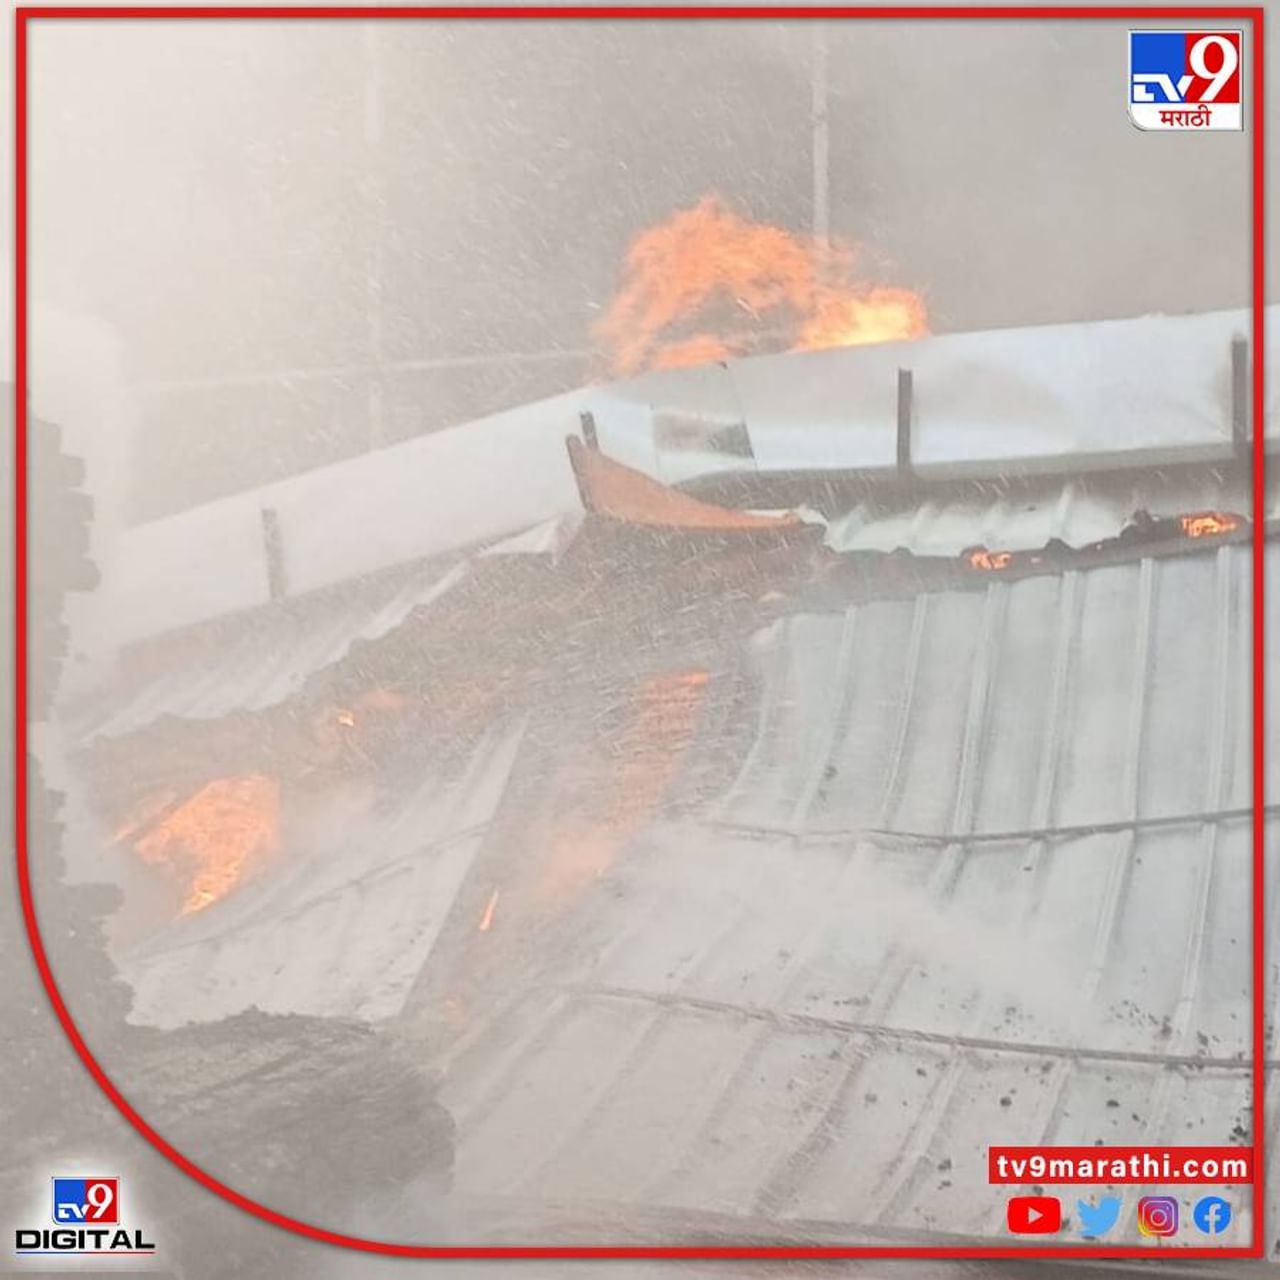 नागपूर : नागपुरातील कापसी भागात लाकडाच्या कारखान्याला आग लागली. ही लागलेली आग पूर्णतः नियंत्रणात आणण्यात अग्निशमन दलाला यश आलंय. 